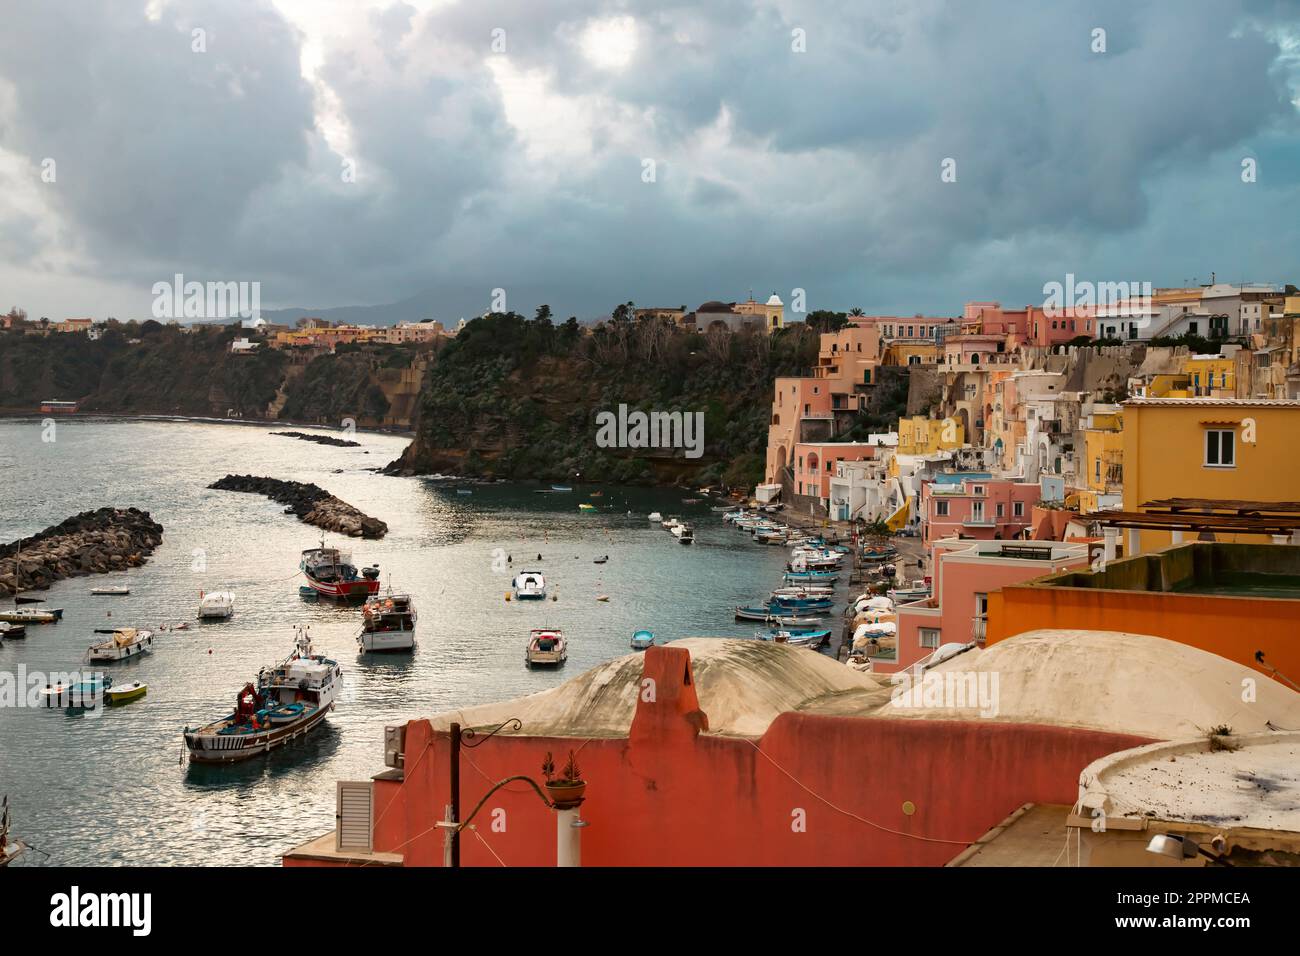 Beau village de pêcheurs, Marina Corricella sur l'île de Procida, baie de Naples, Italie. Banque D'Images